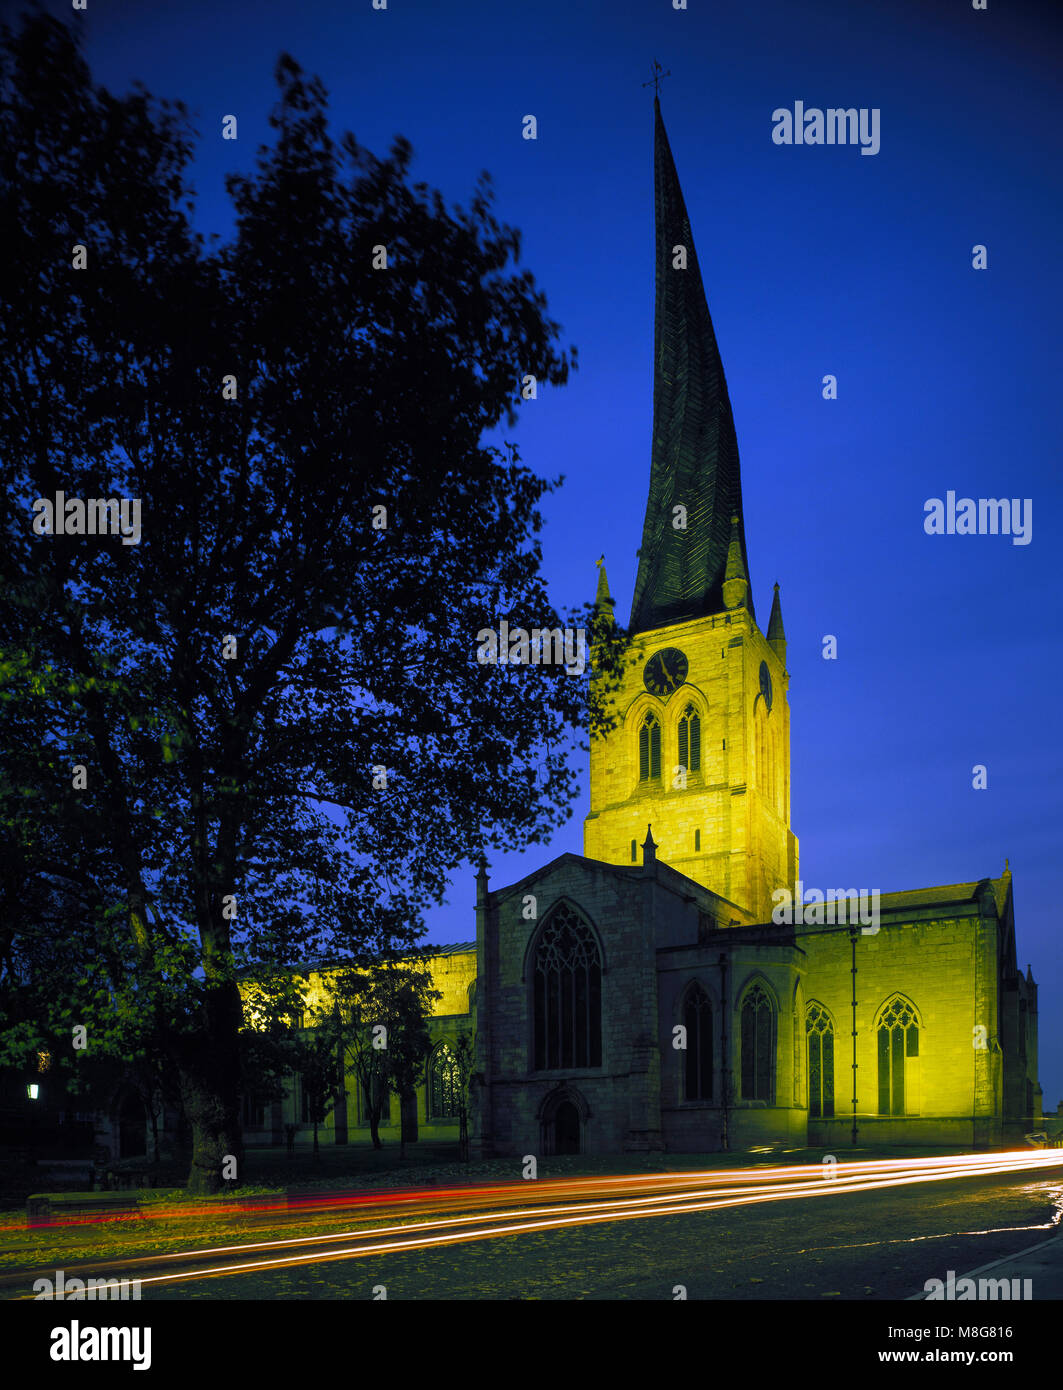 Sainte Marie et l'église All Saints Chesterfield, Derbyshire, Angleterre, Royaume-Uni Banque D'Images